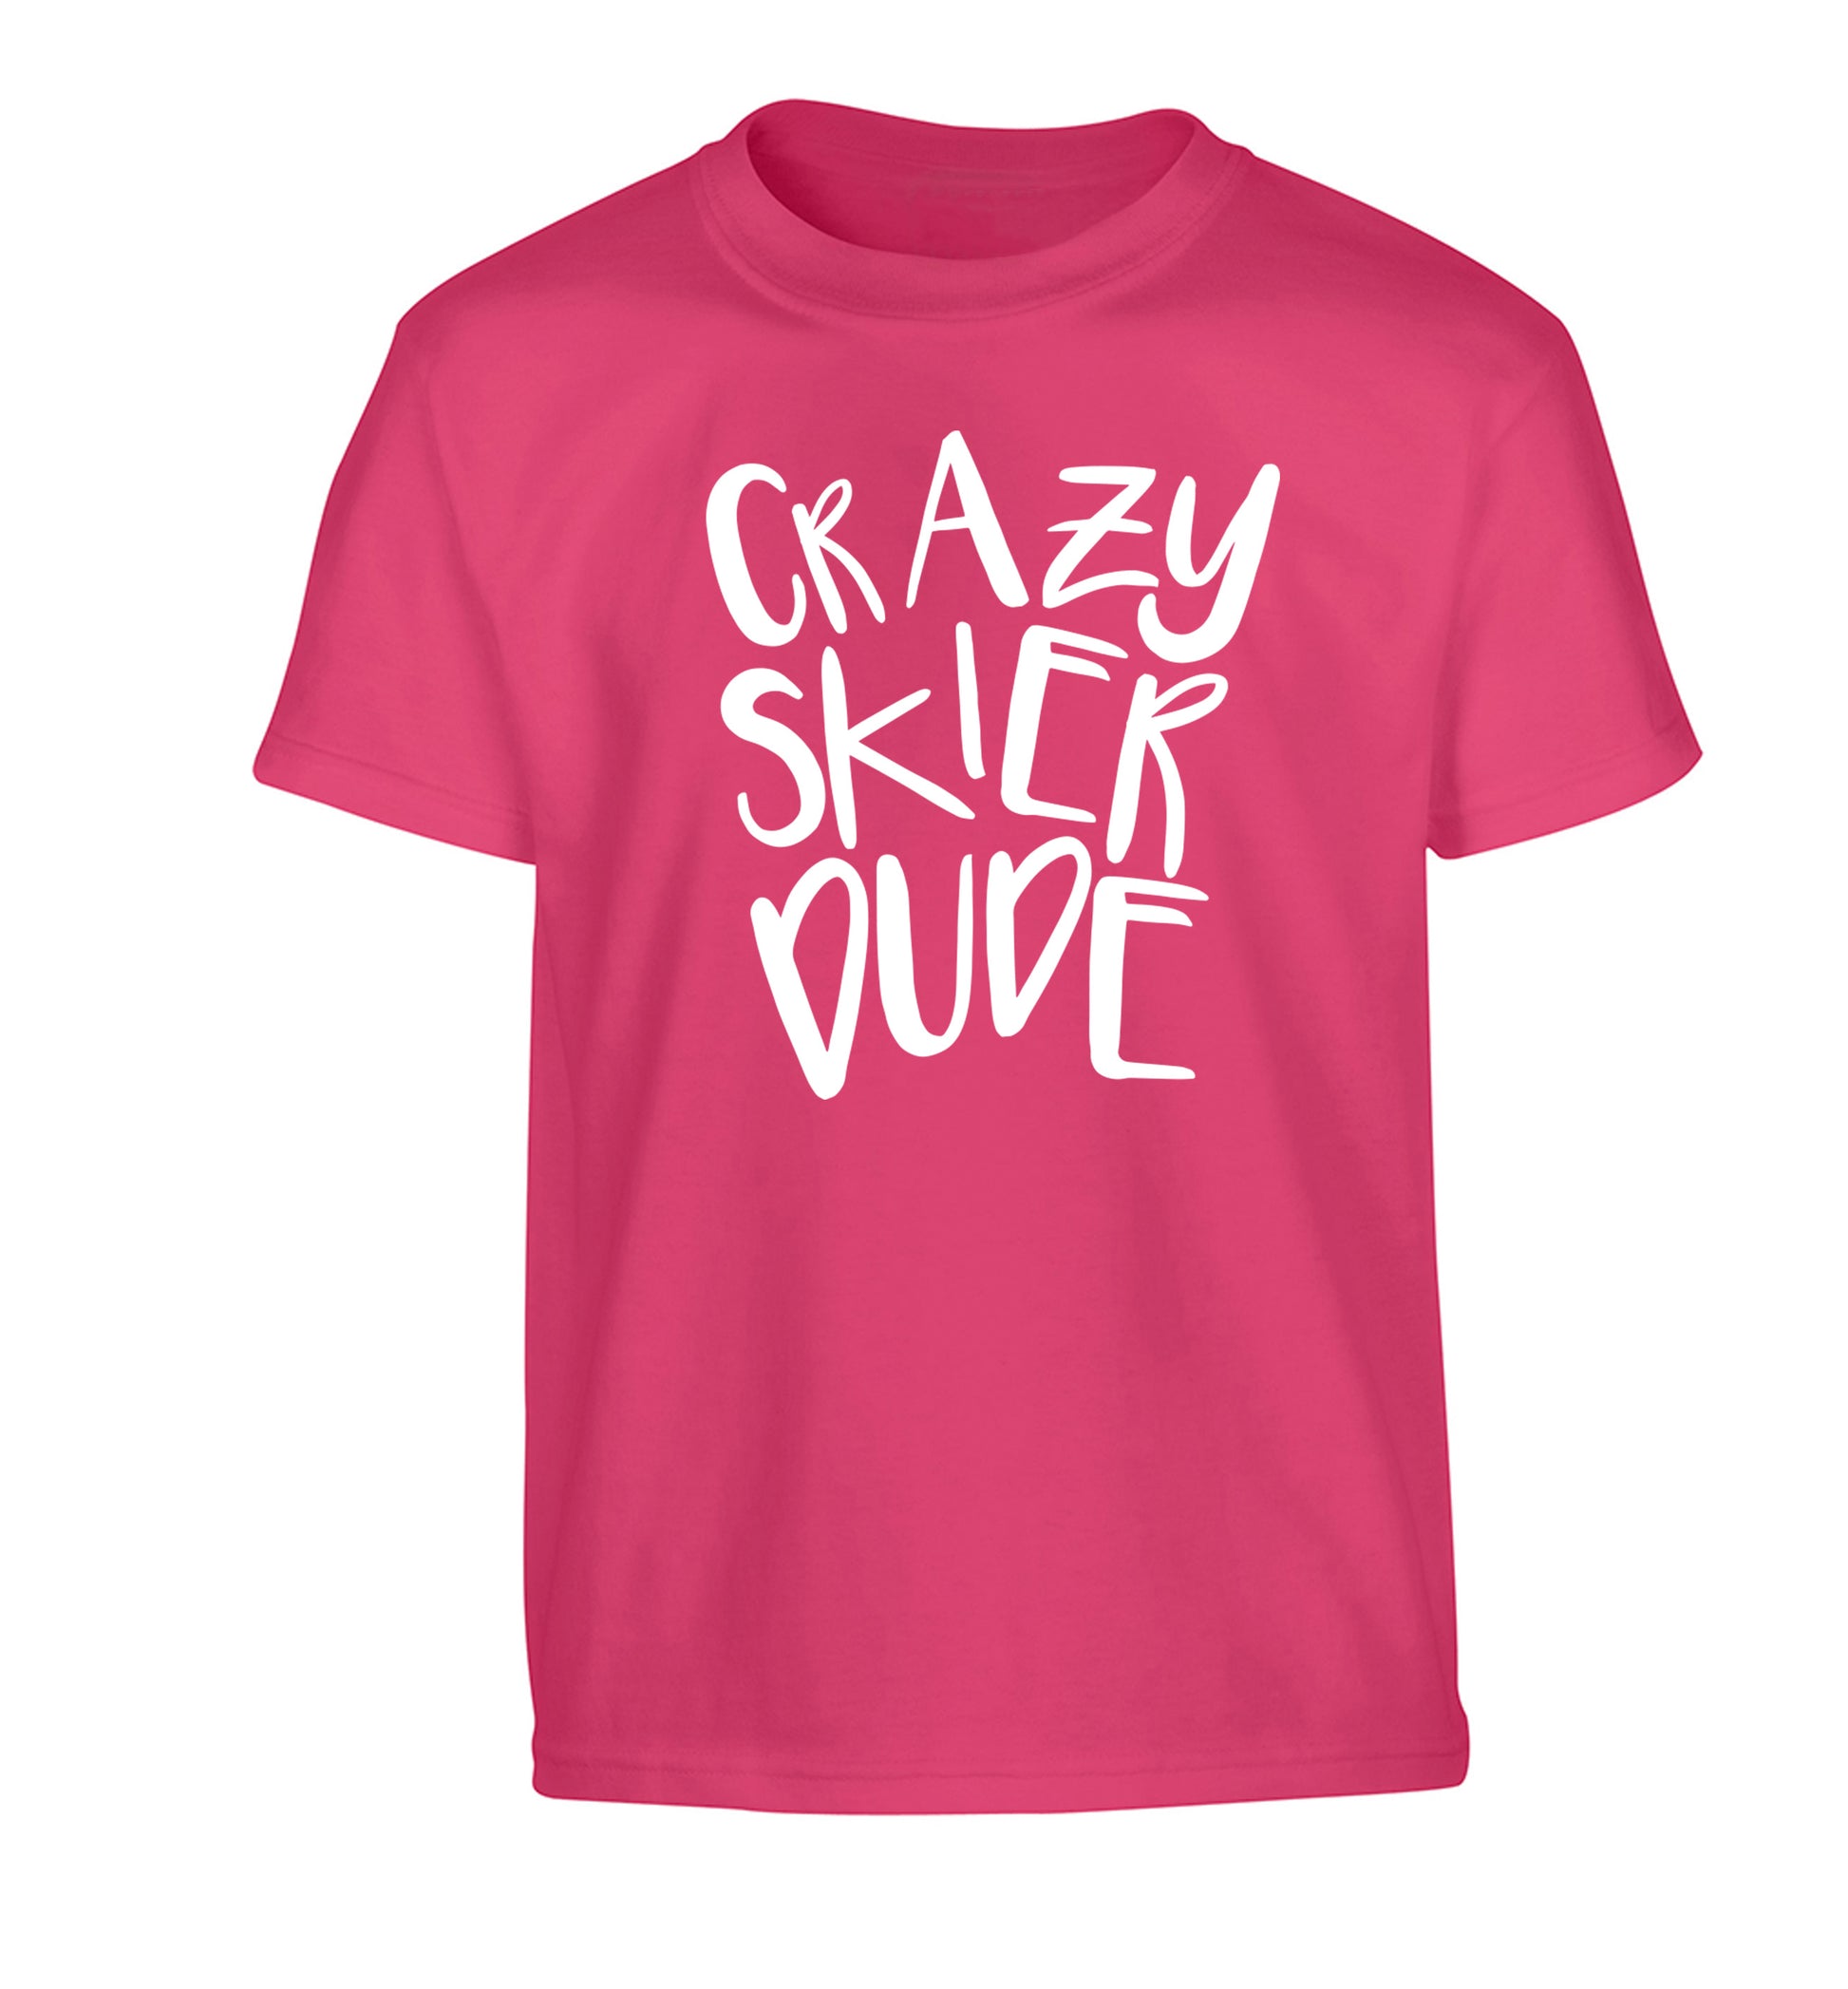 Crazy skier dude Children's pink Tshirt 12-14 Years